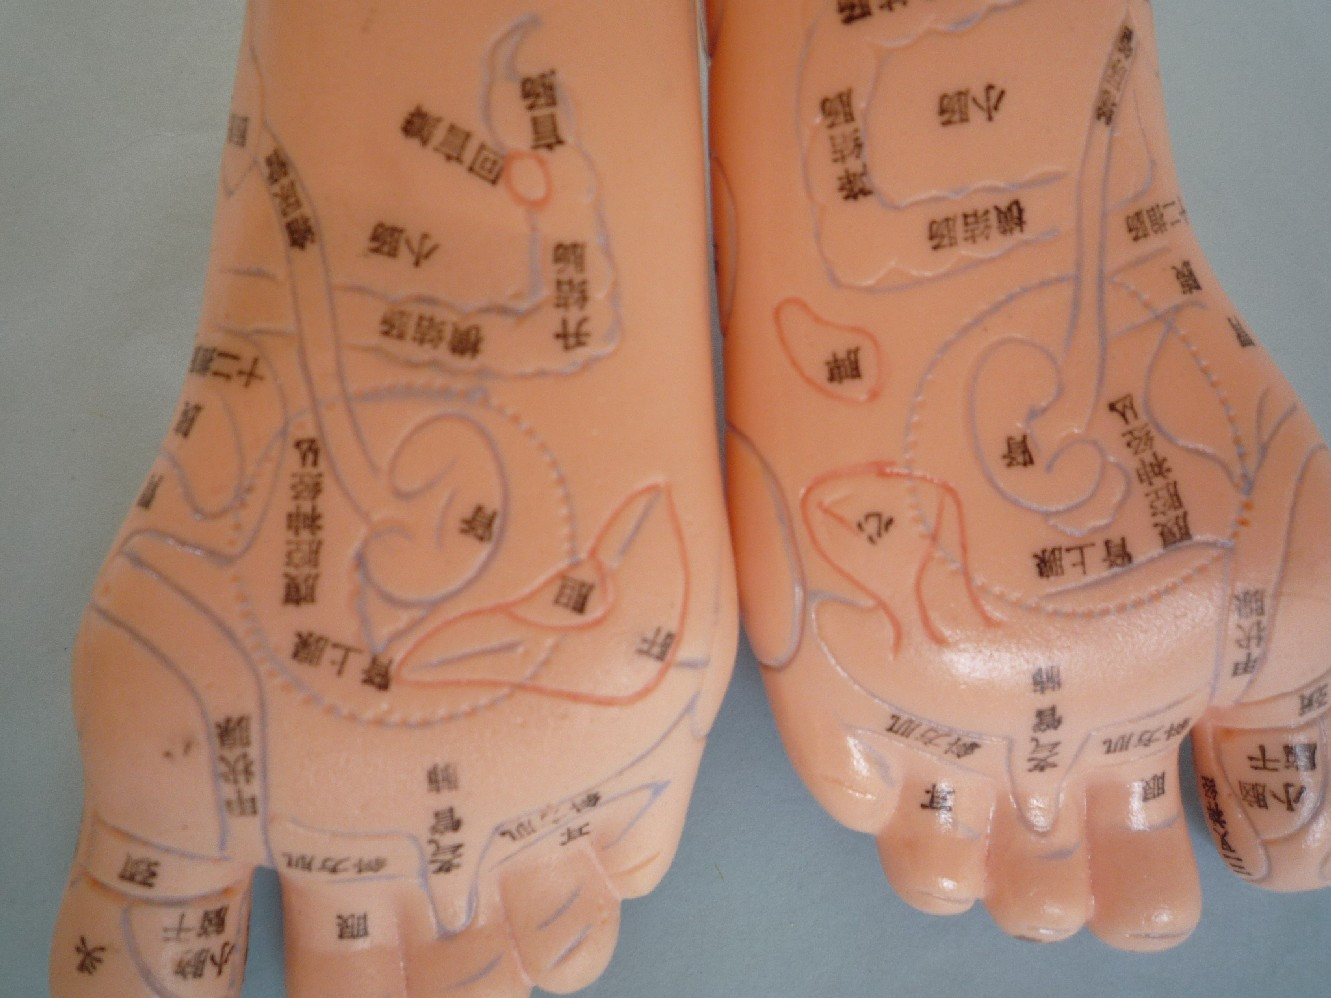 保健足模型,用pvc制成,显示相对应的人体内脏器官在脚上的反射区位置